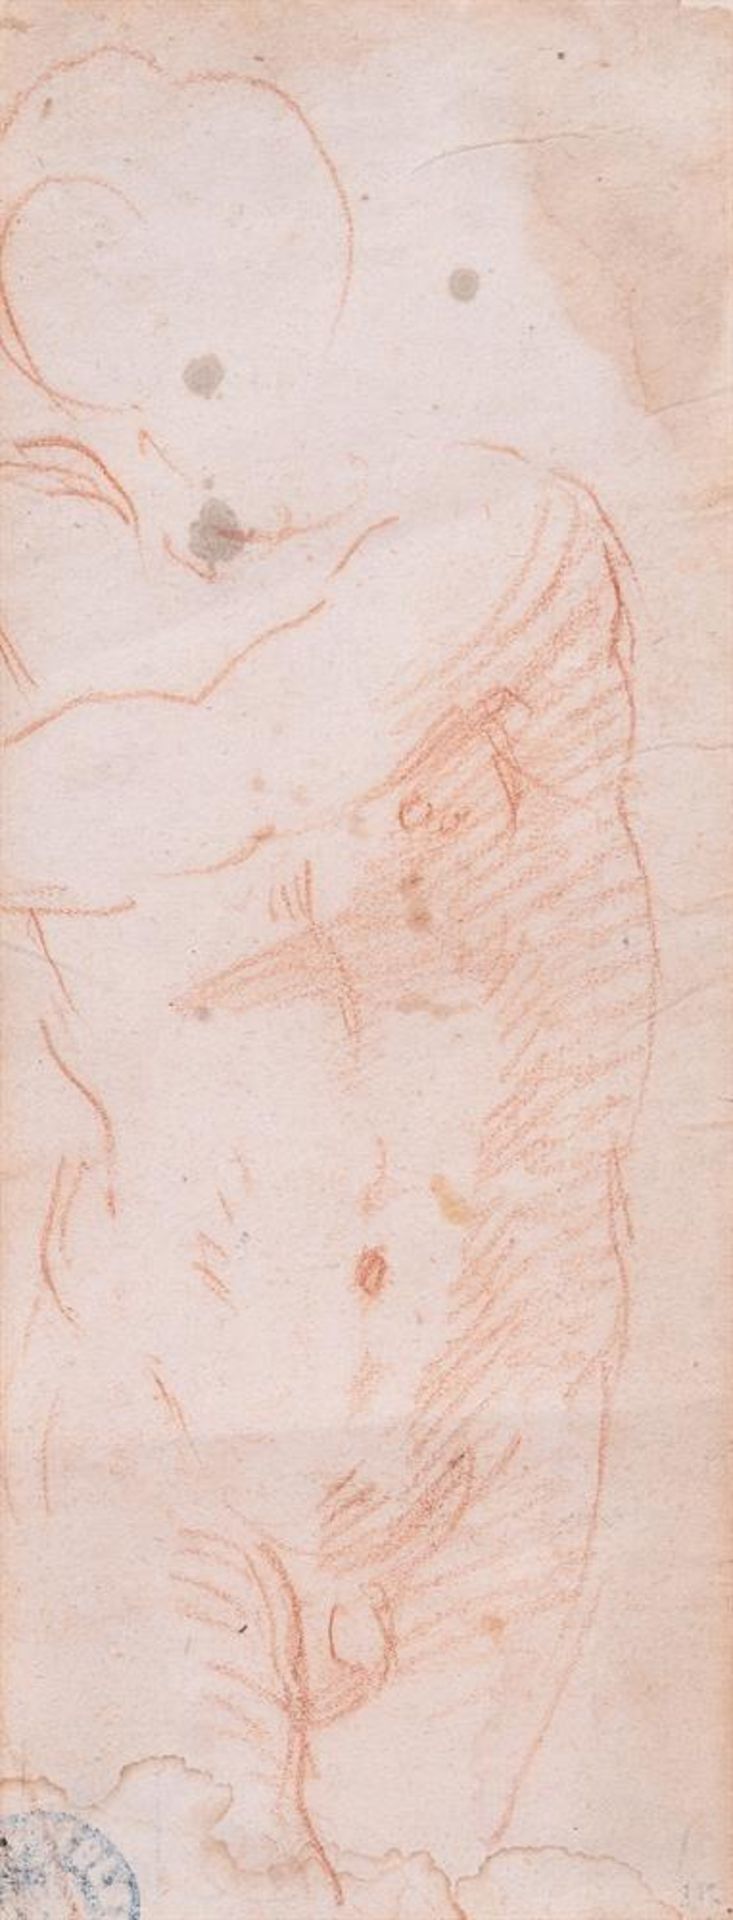 ATTRIBUTED TO MATTIA PRETI (ITALIAN 1613-1699), A STUDY OF A MALE TORSO - Image 2 of 3